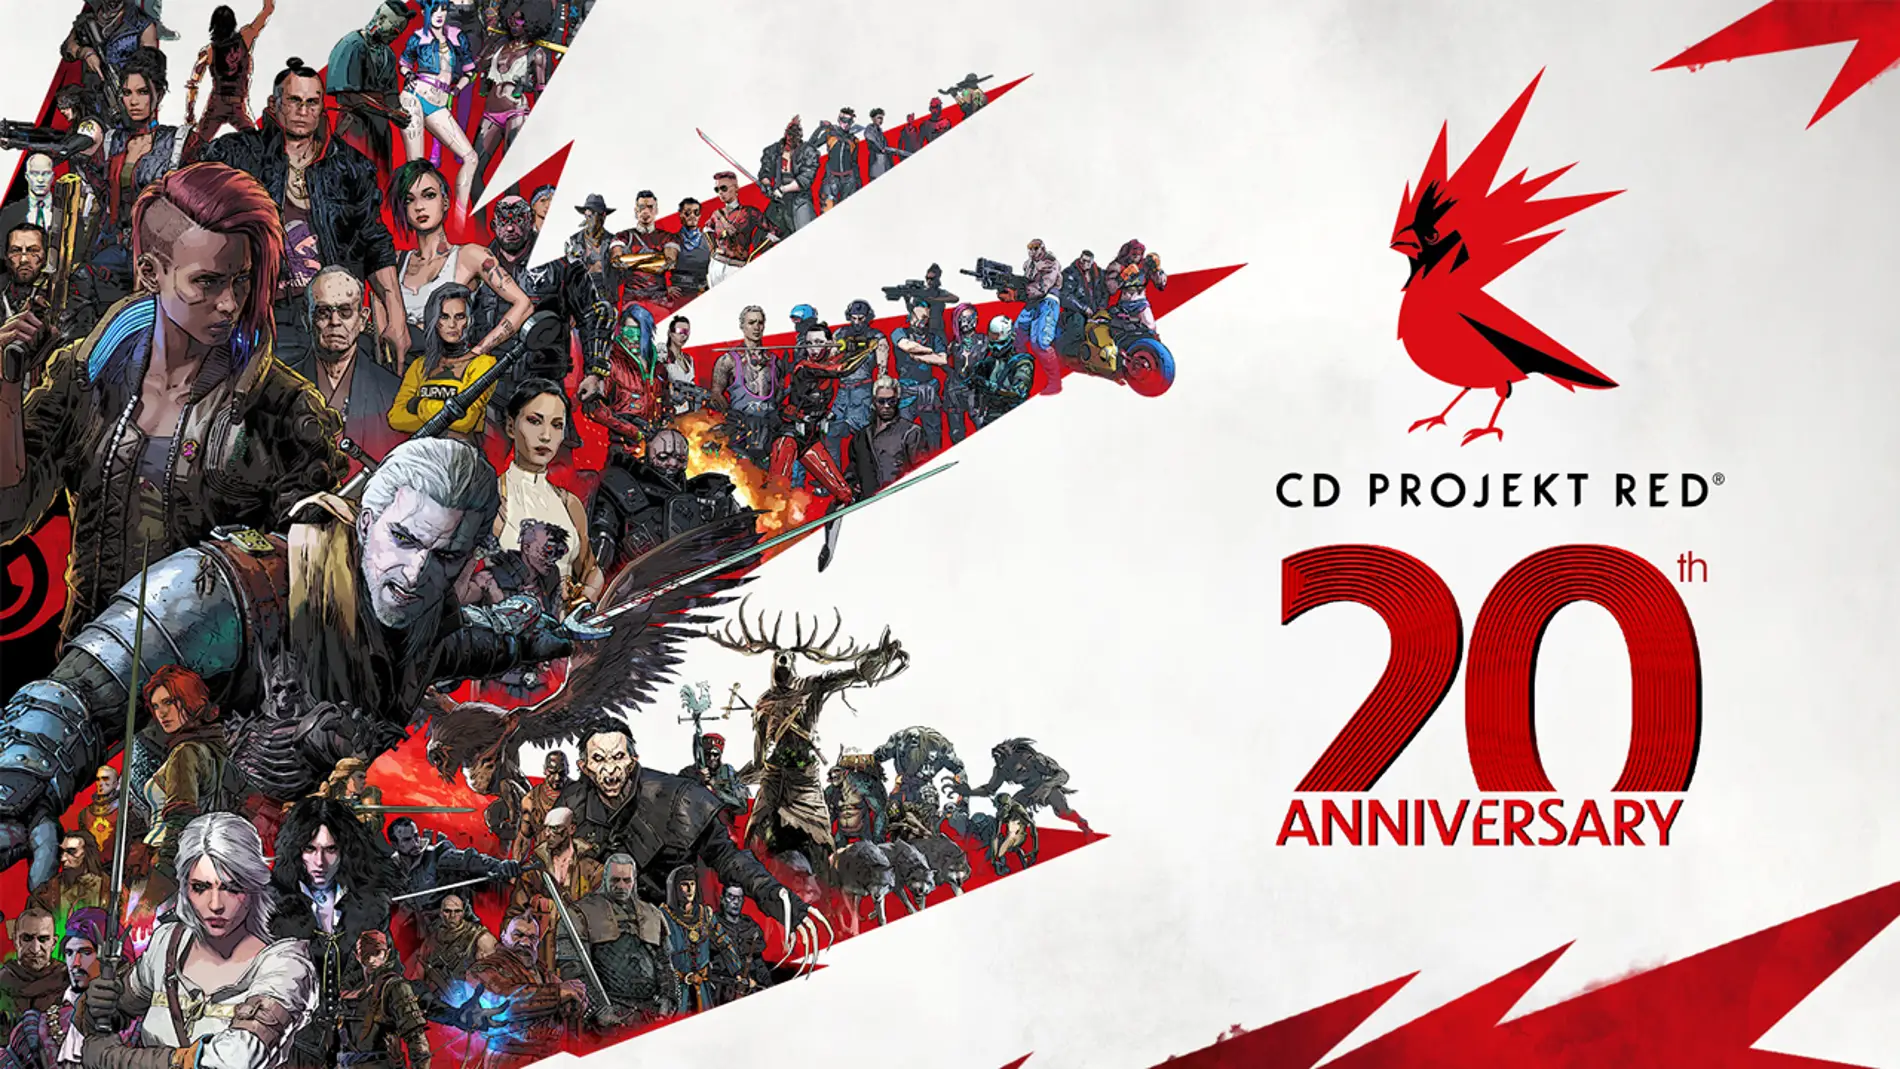 CD Projekt RED, autores de &#39;The Witcher&#39; y &#39;Cyberpunk 2077&#39;, celebran su 20 aniversario 